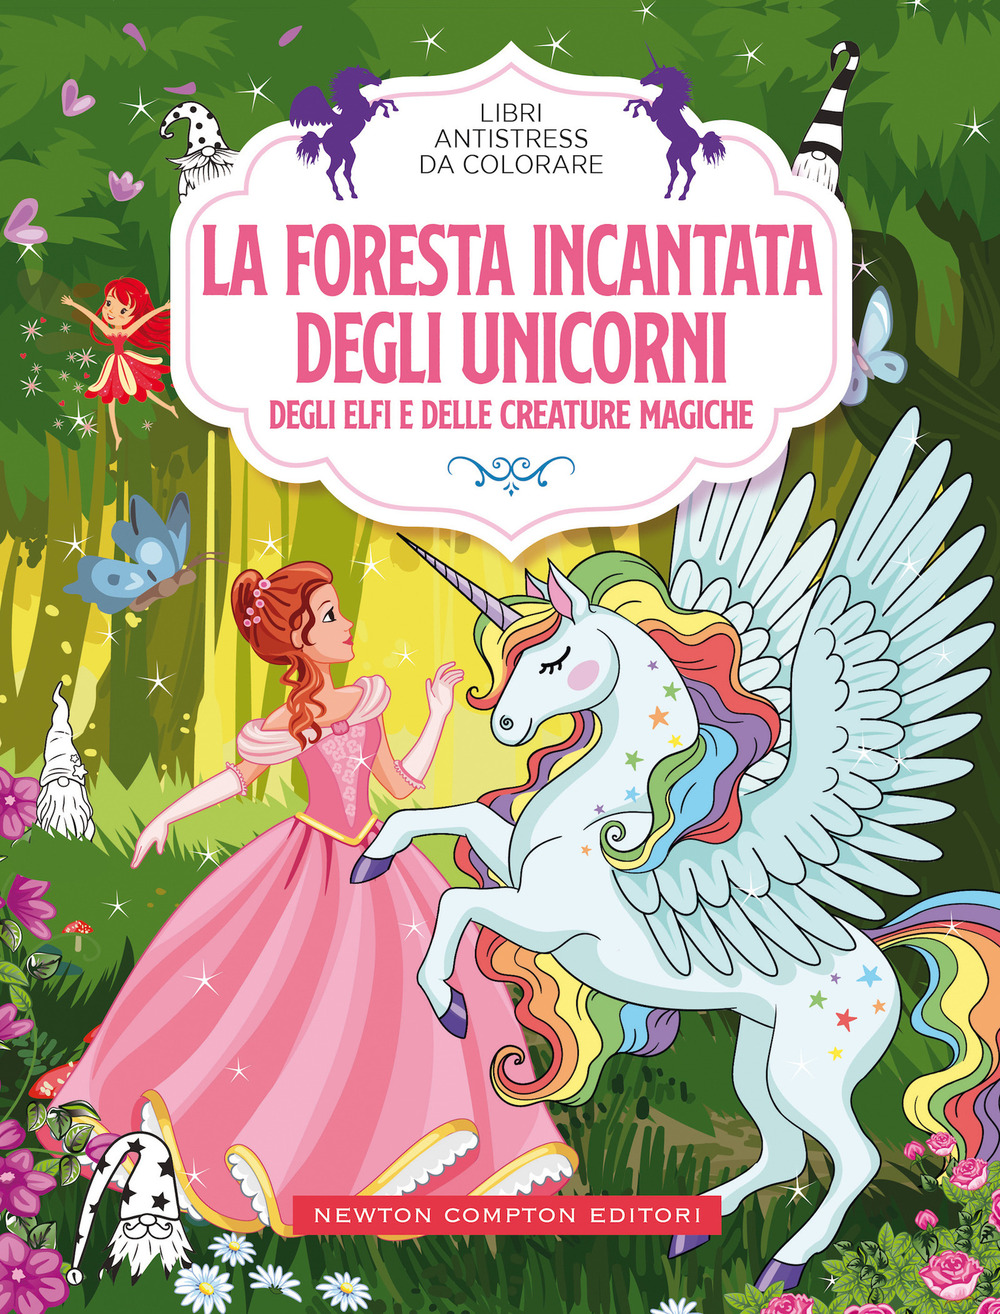 La foresta incantata degli unicorni, degli elfi e delle creature magiche.  Libri antistress da colorare di - Bookdealer